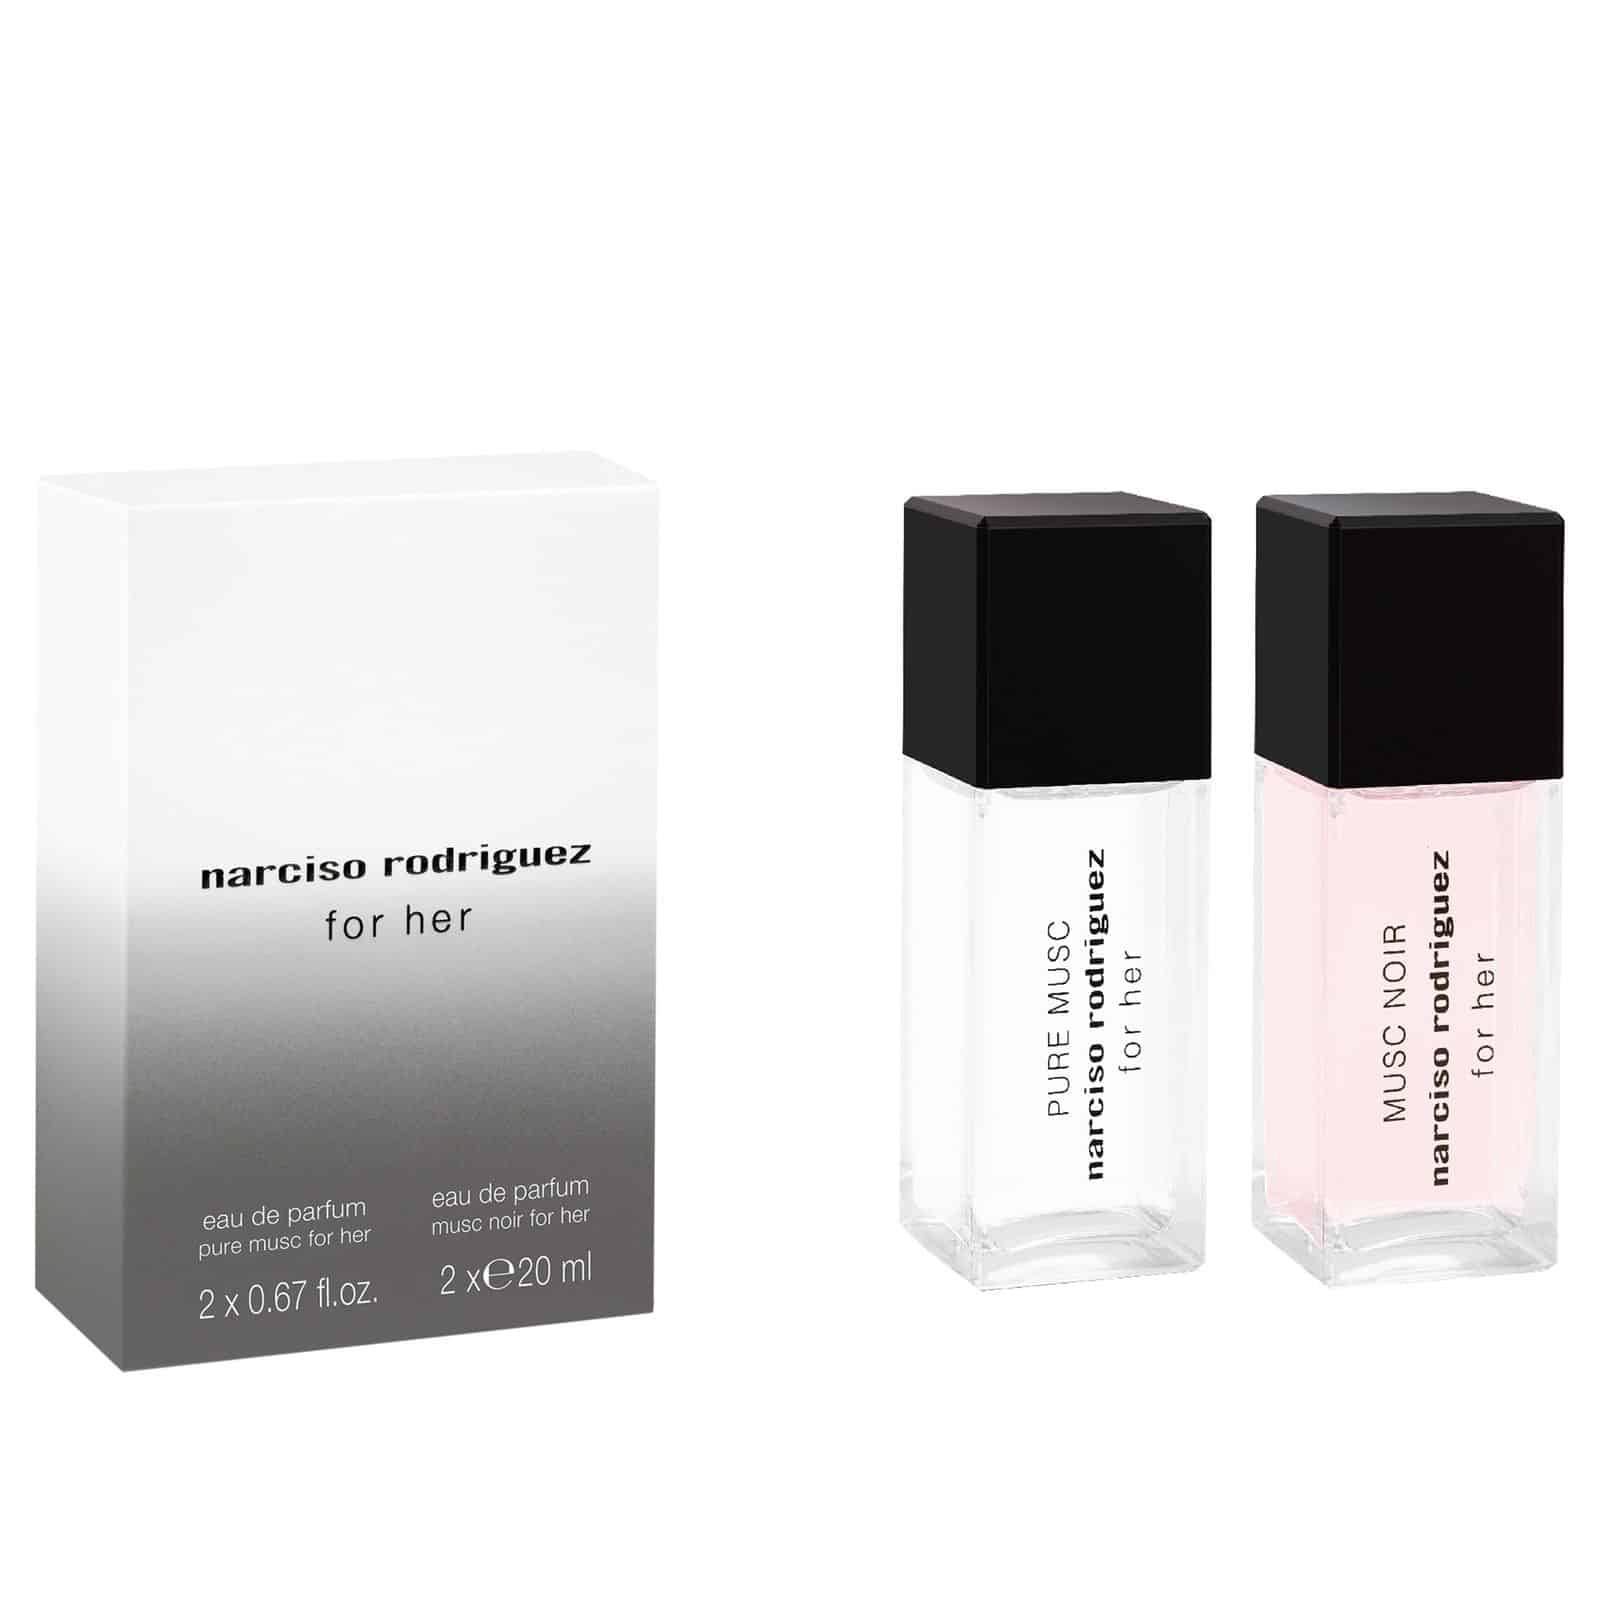 Narciso Rodriguez për miksera të saj të parfumeve